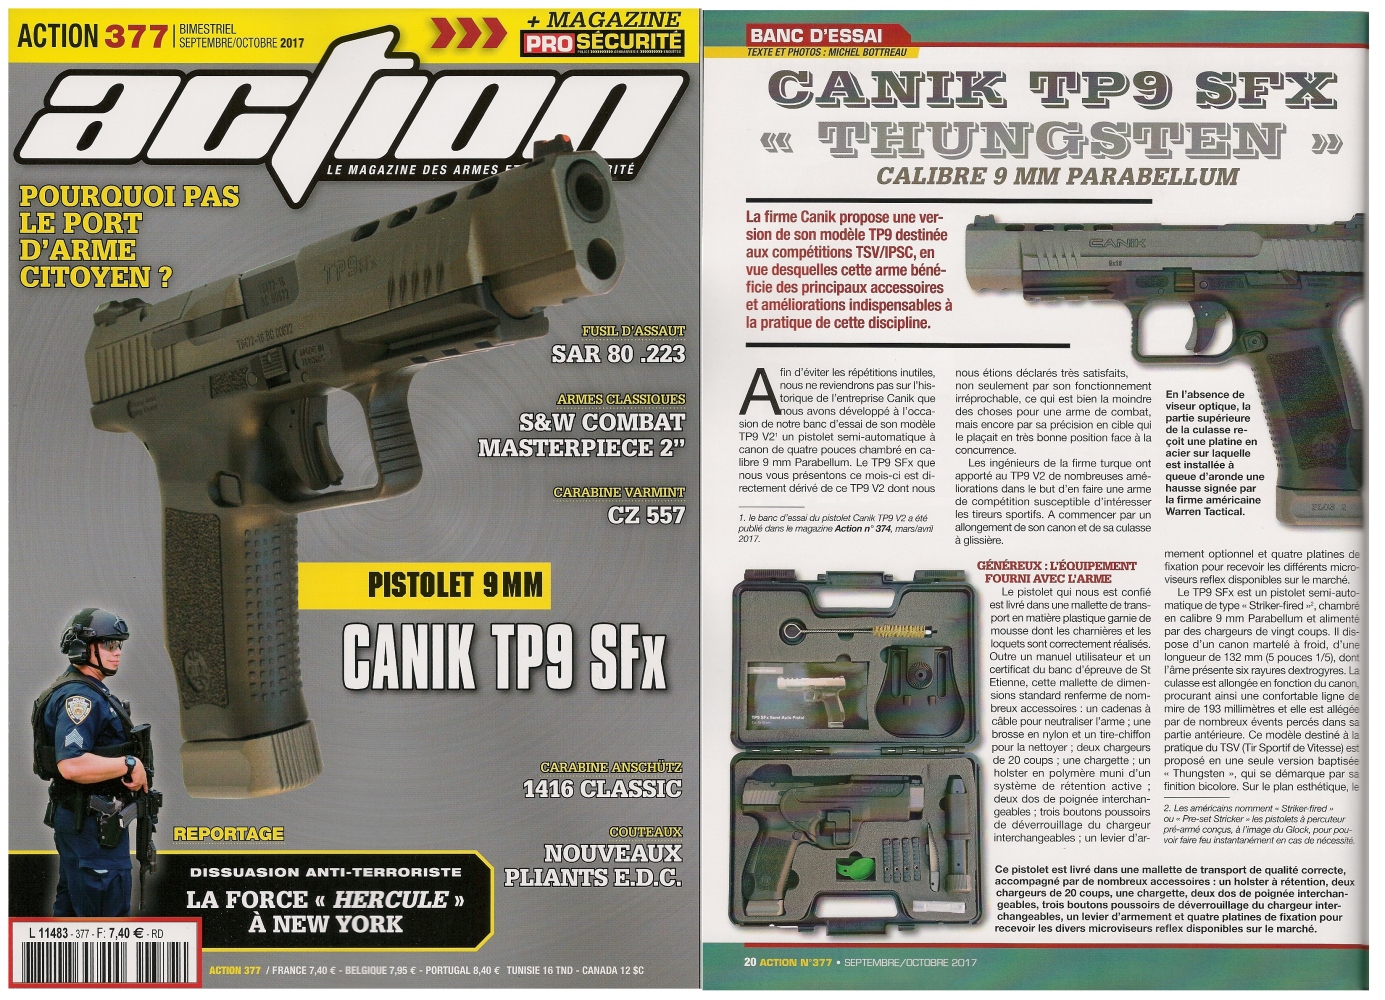 Le banc d'essai du pistolet Canik TP9 SFx Thungsten a été publié sur 6 pages dans le magazine Action n° 377 (septembre/octobre 2017). 